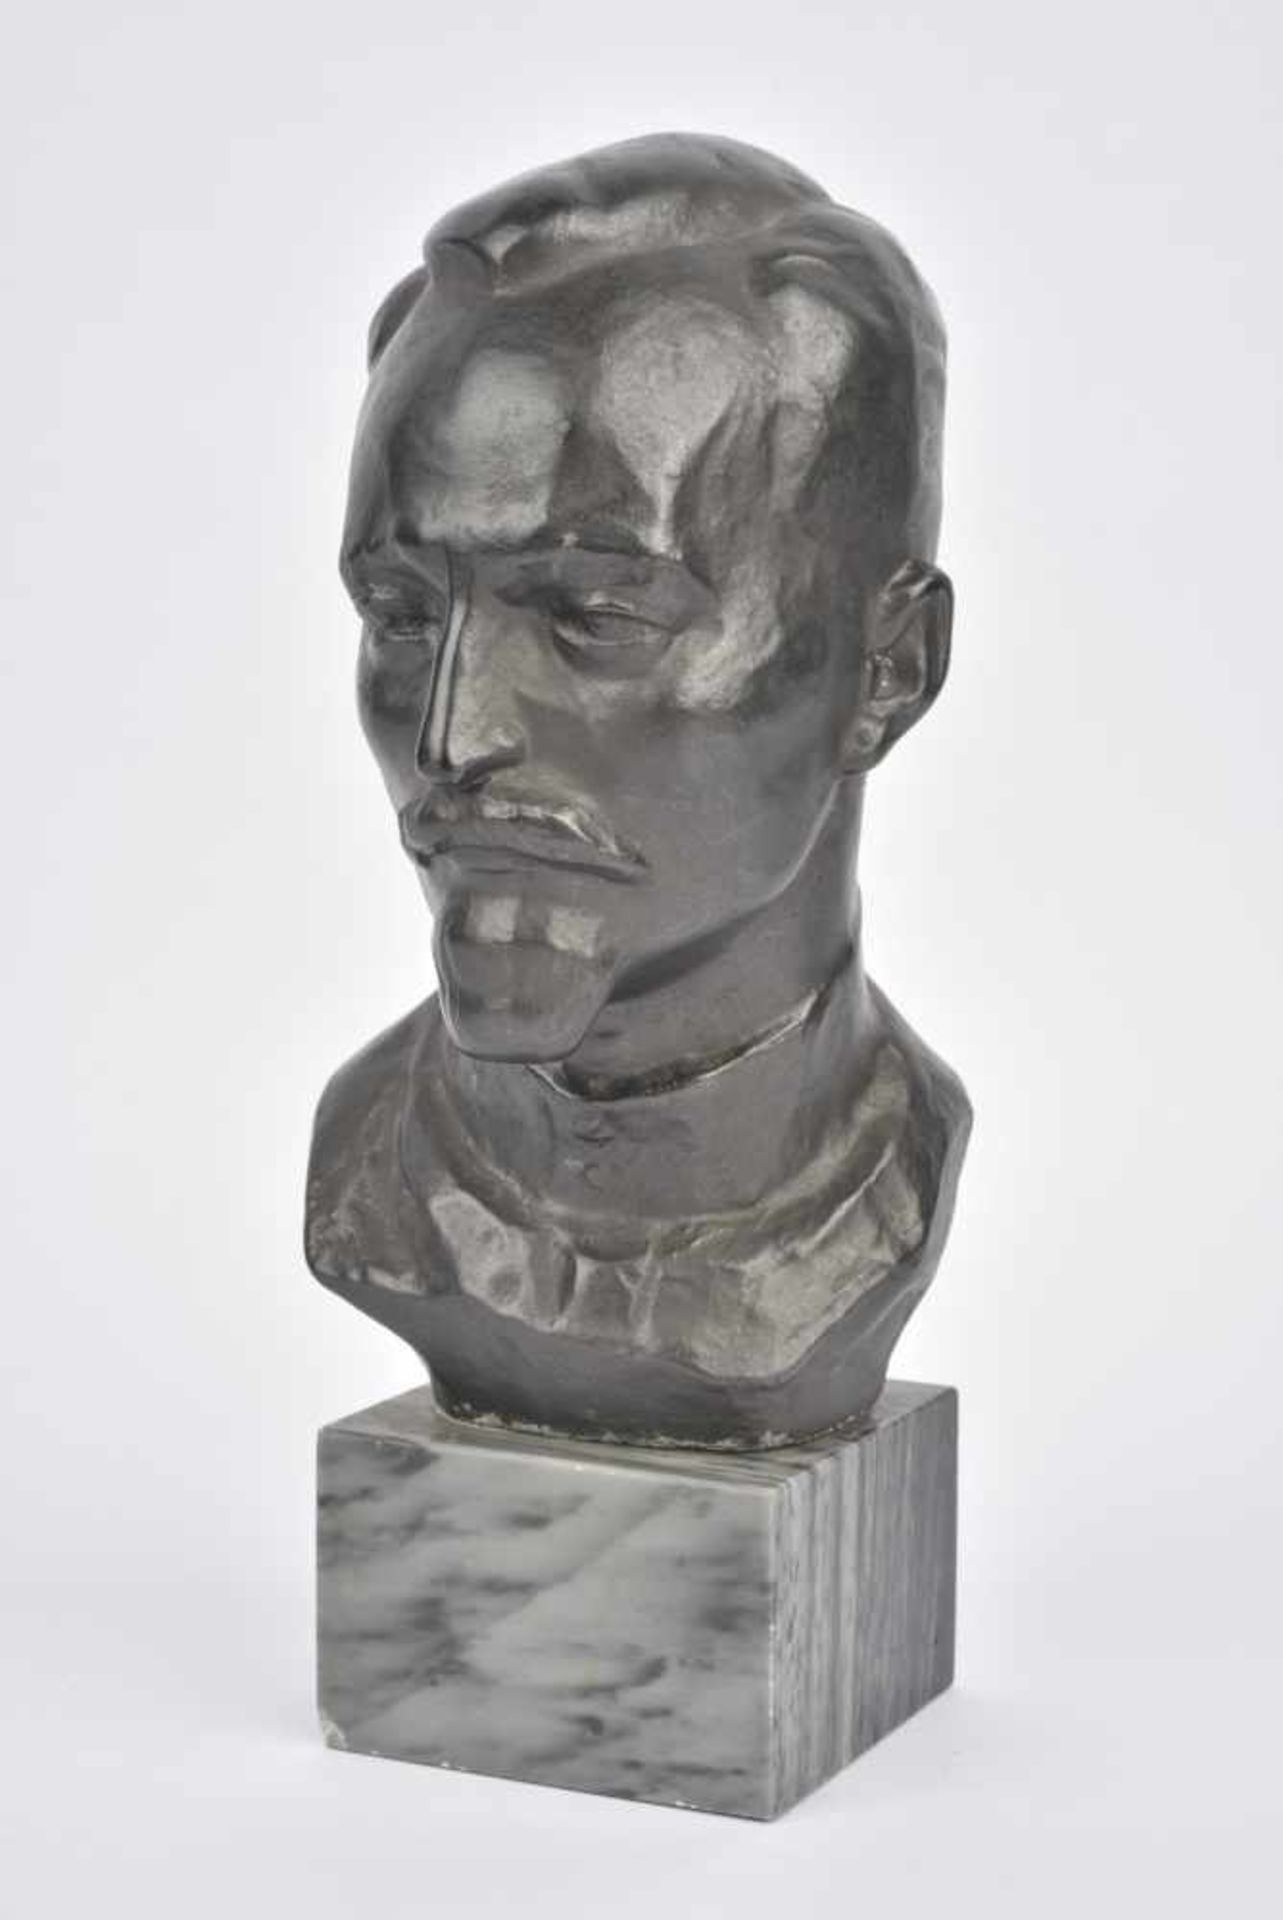 Buste de Feliks Dzerjinski en alliage de Silumin, avec socle (hauteur 19 cm hors socle). Cette pièce